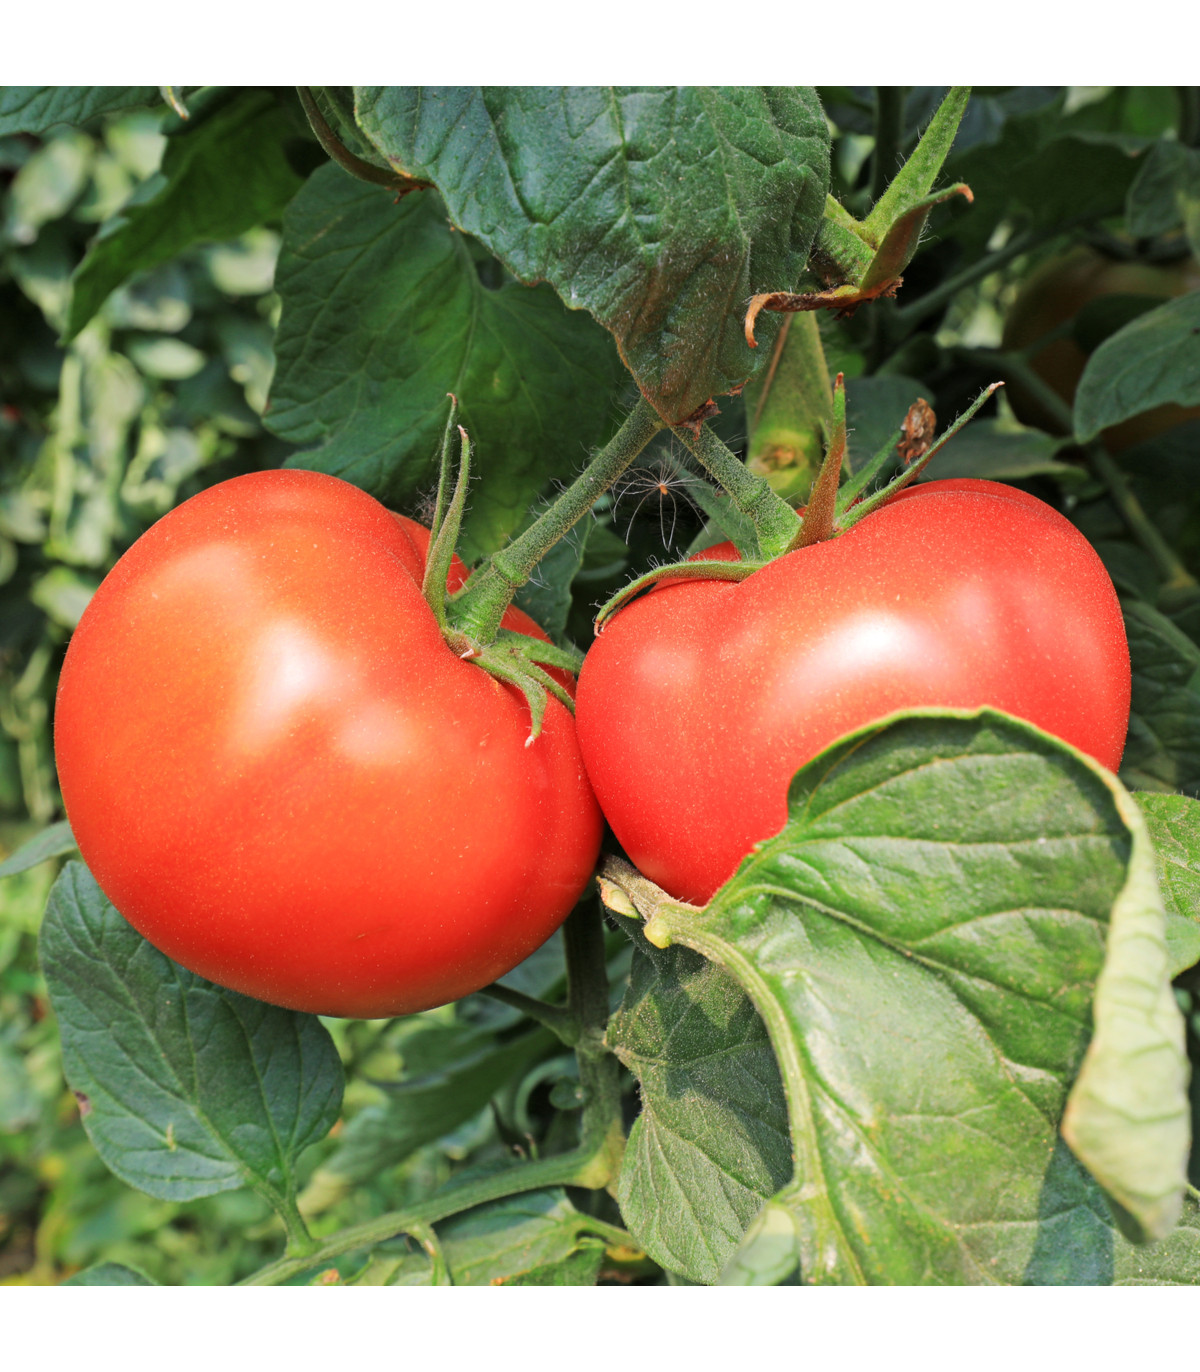 BIO Paradajka Diplom F1 - Solanum lycopersicum - bio semená paradajky - 8 ks